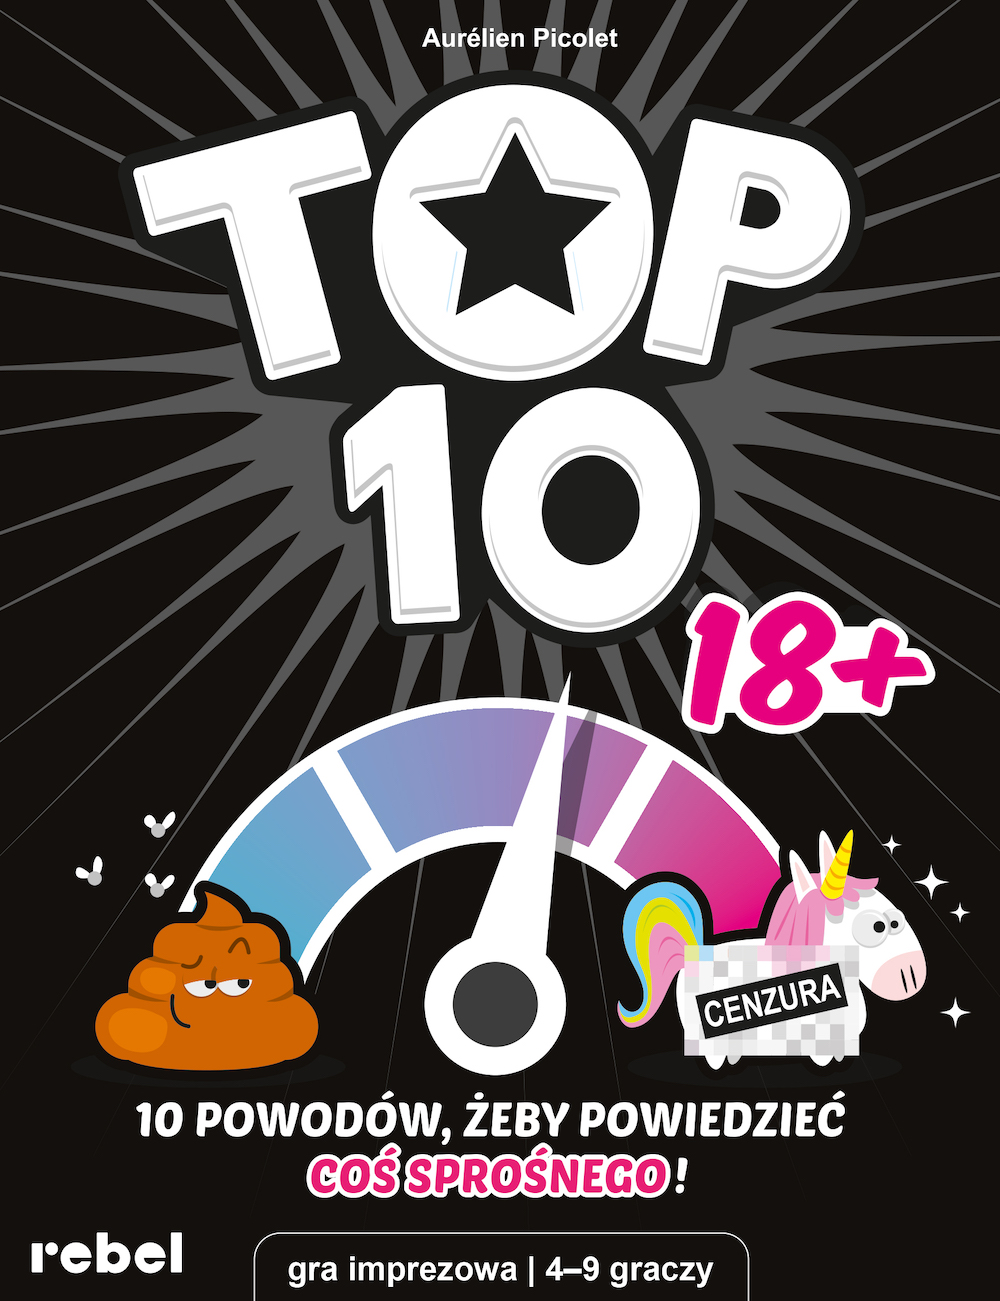 Top 10 (18+)